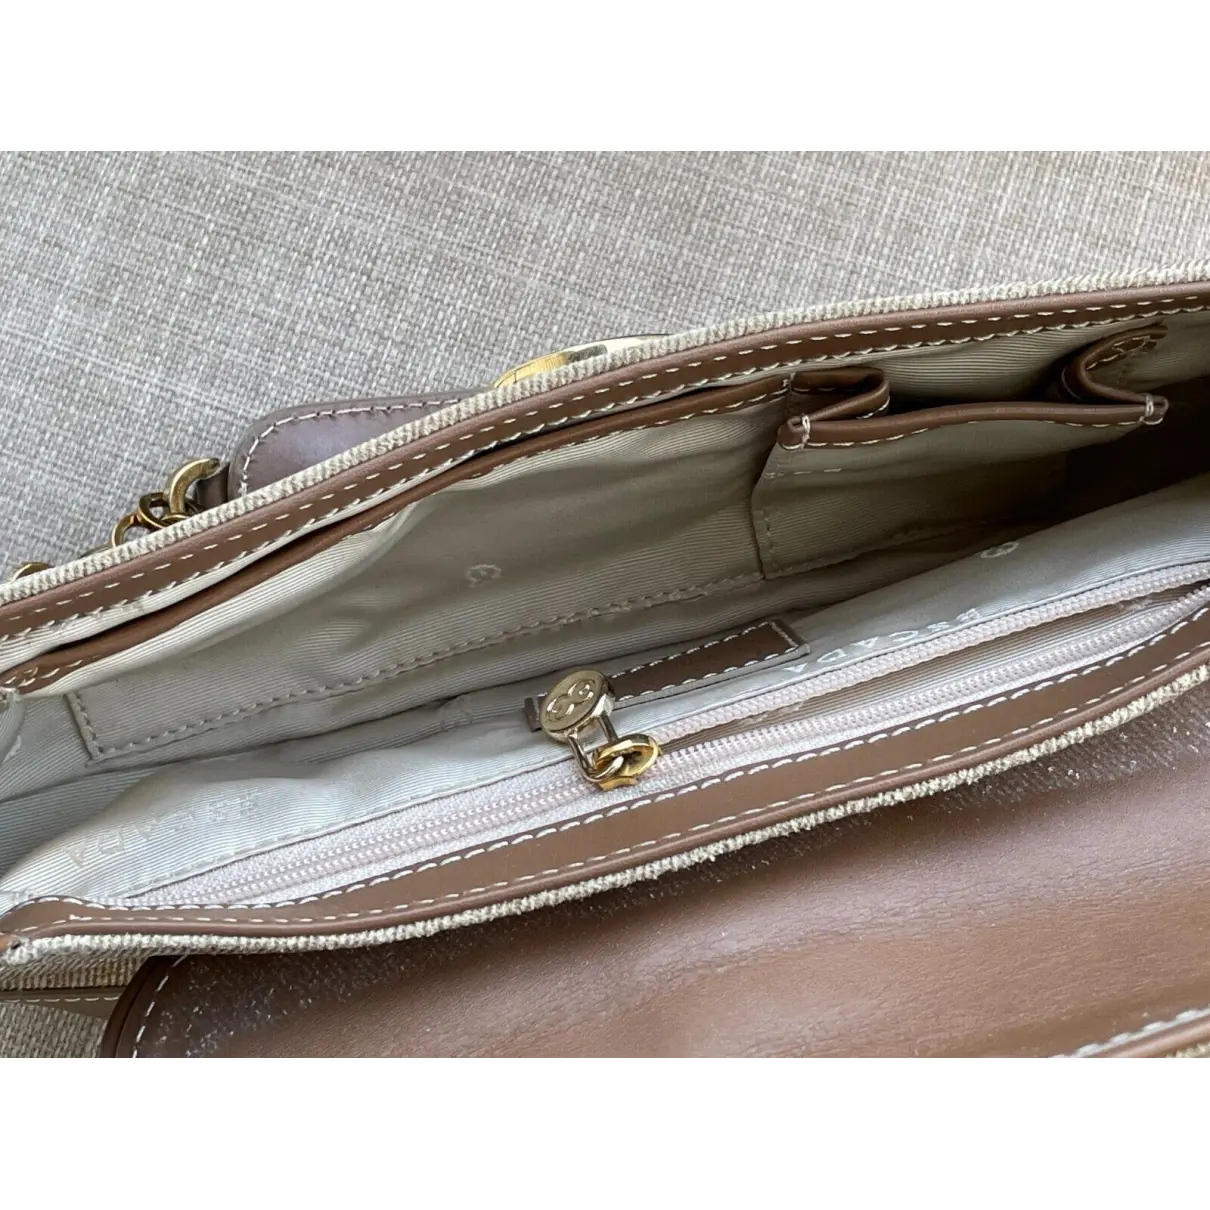 Buy Escada Leather handbag online